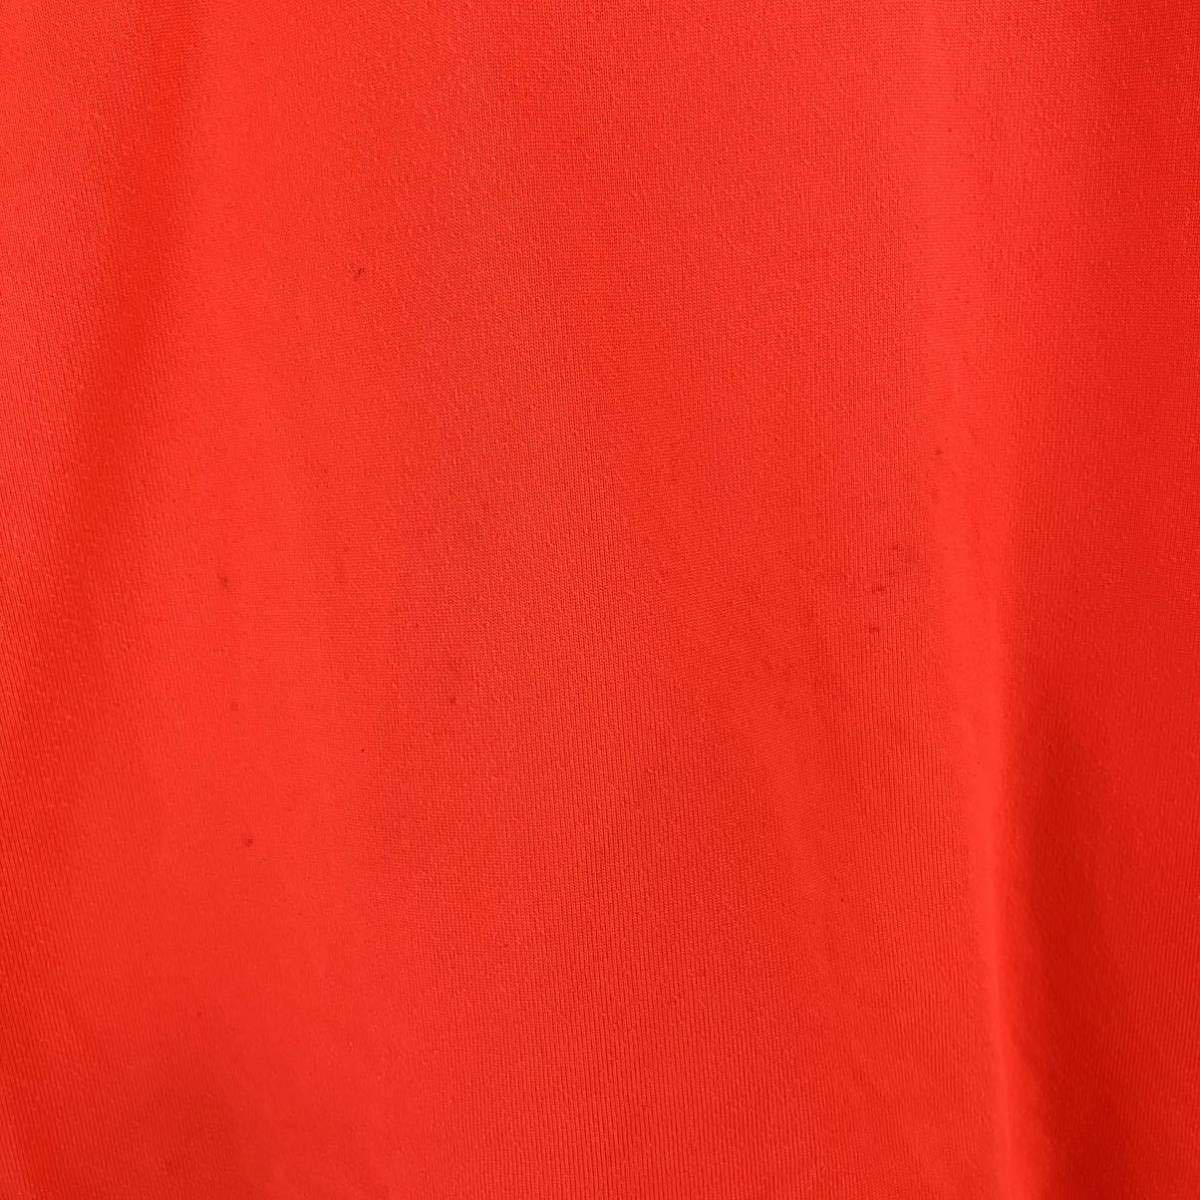 UNDER ARMOUR アンダーアーマー 半袖 Tシャツ キッズ ジュニア YLG 150 蛍光 オレンジ カジュアル スポーツ トレーニング ウェア_画像4